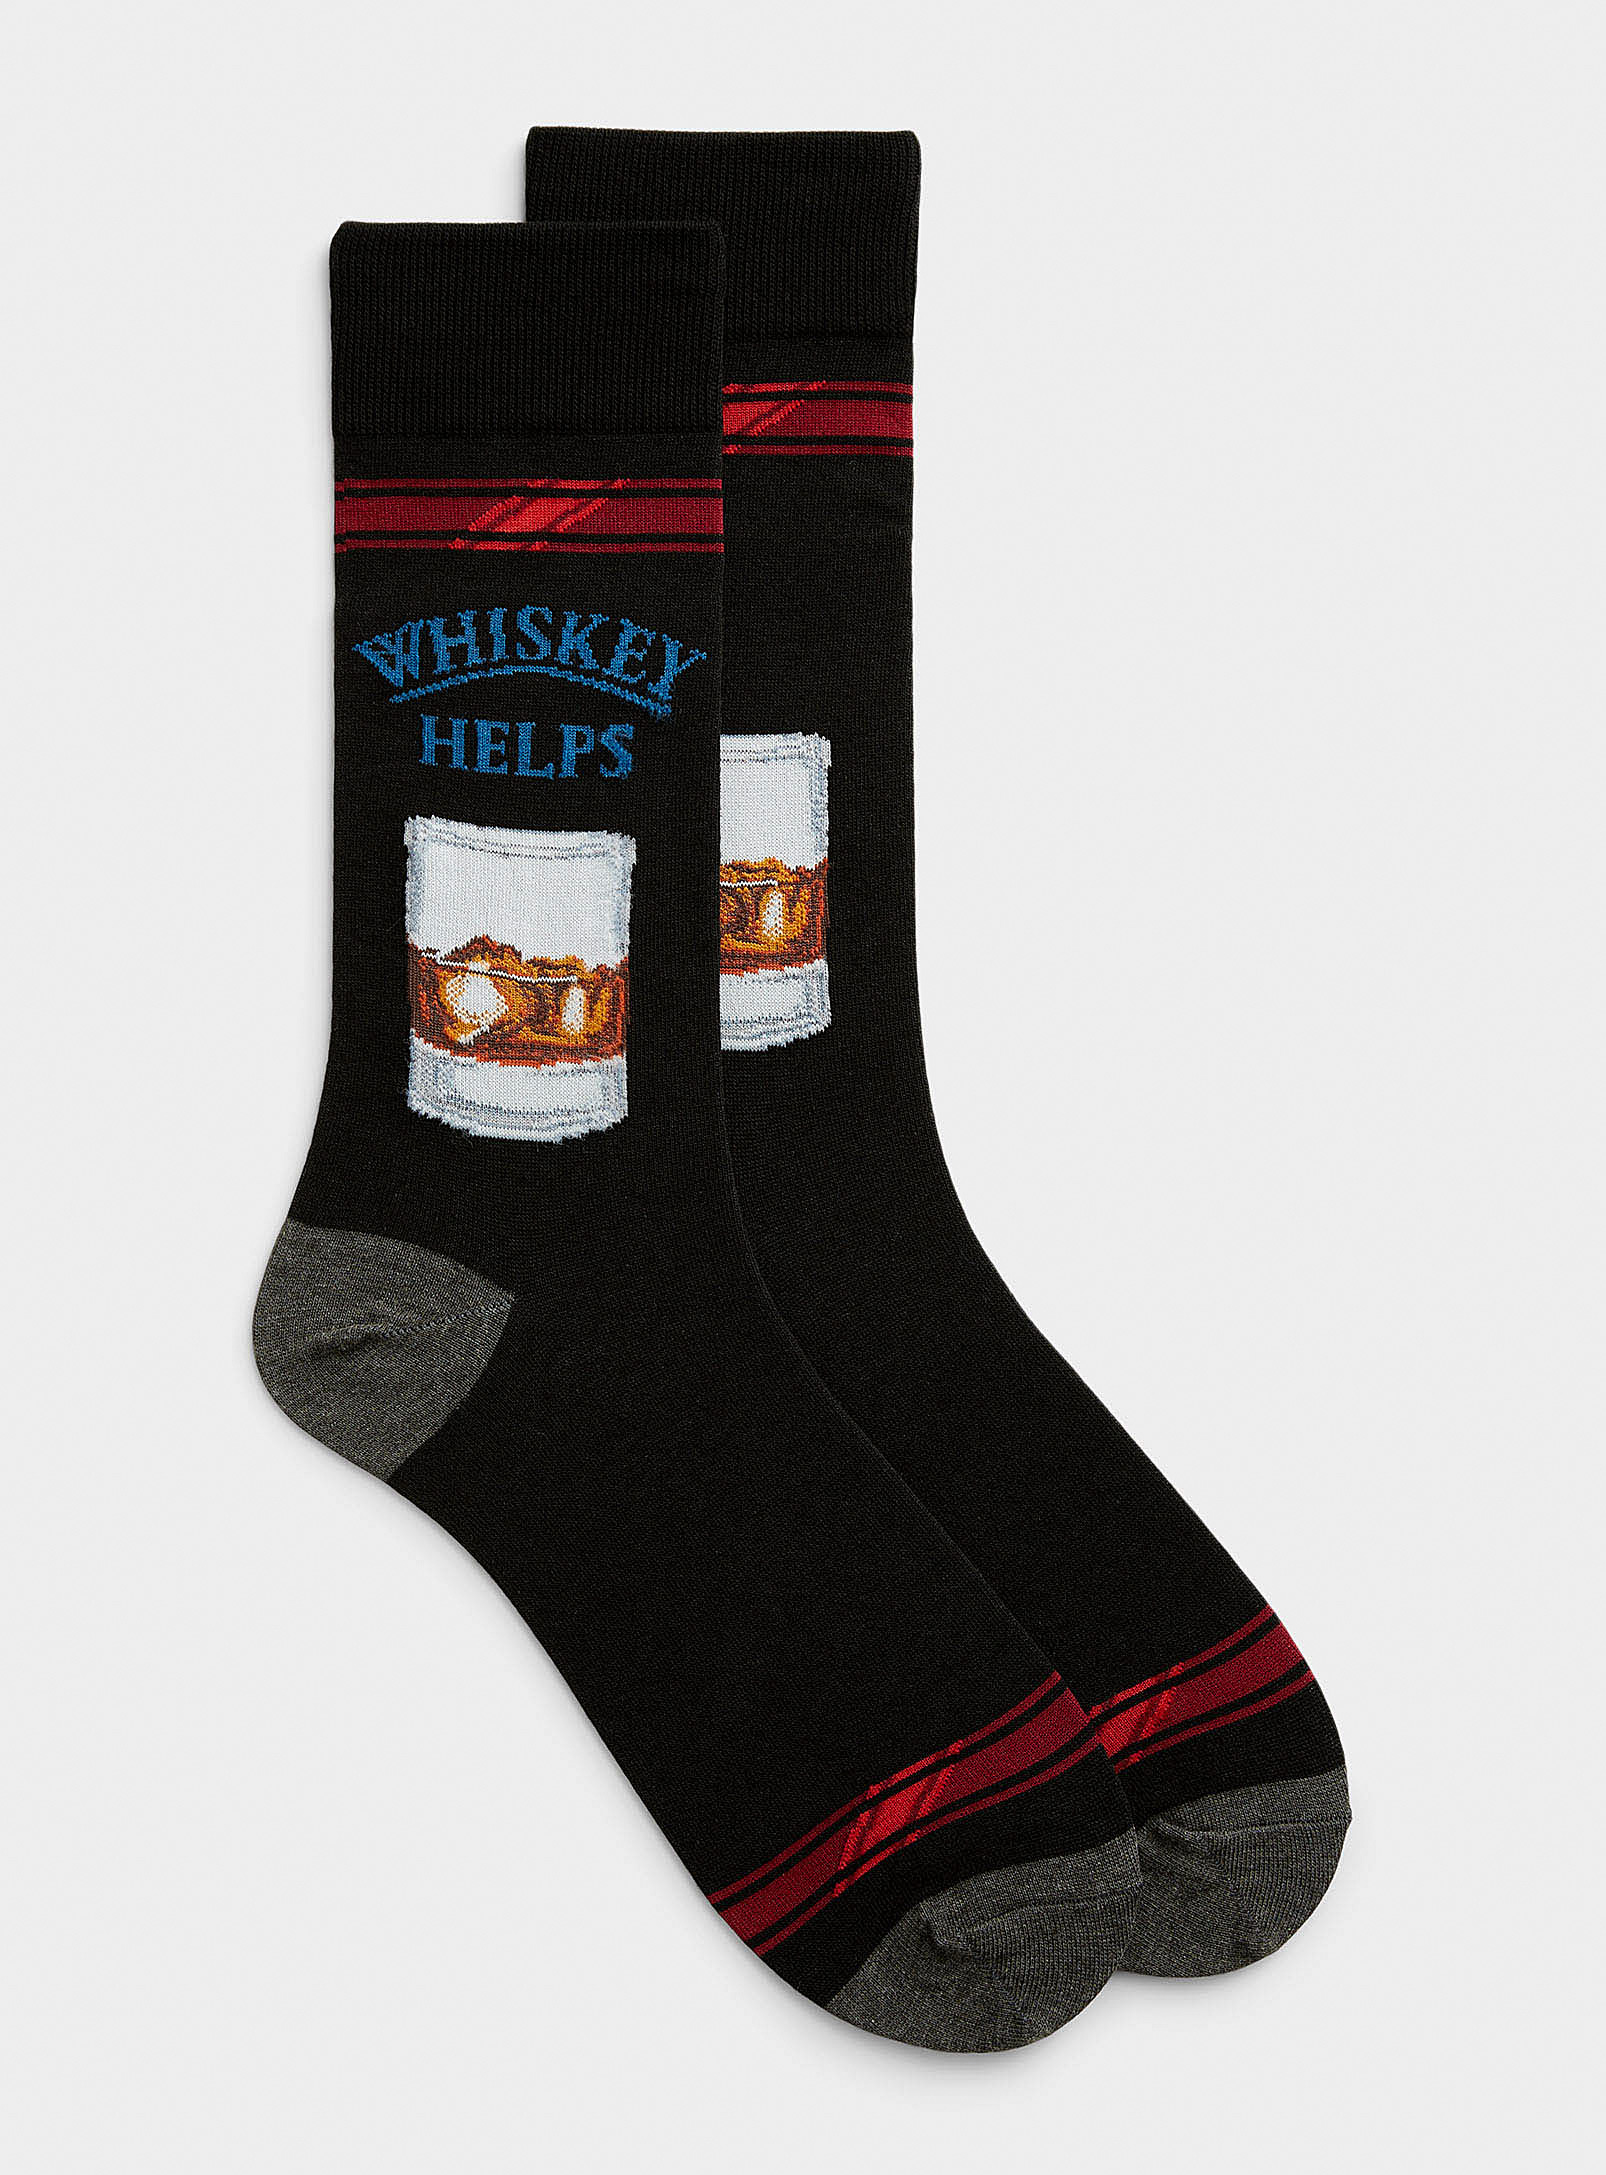 Hot Sox Whisky Sock In Black